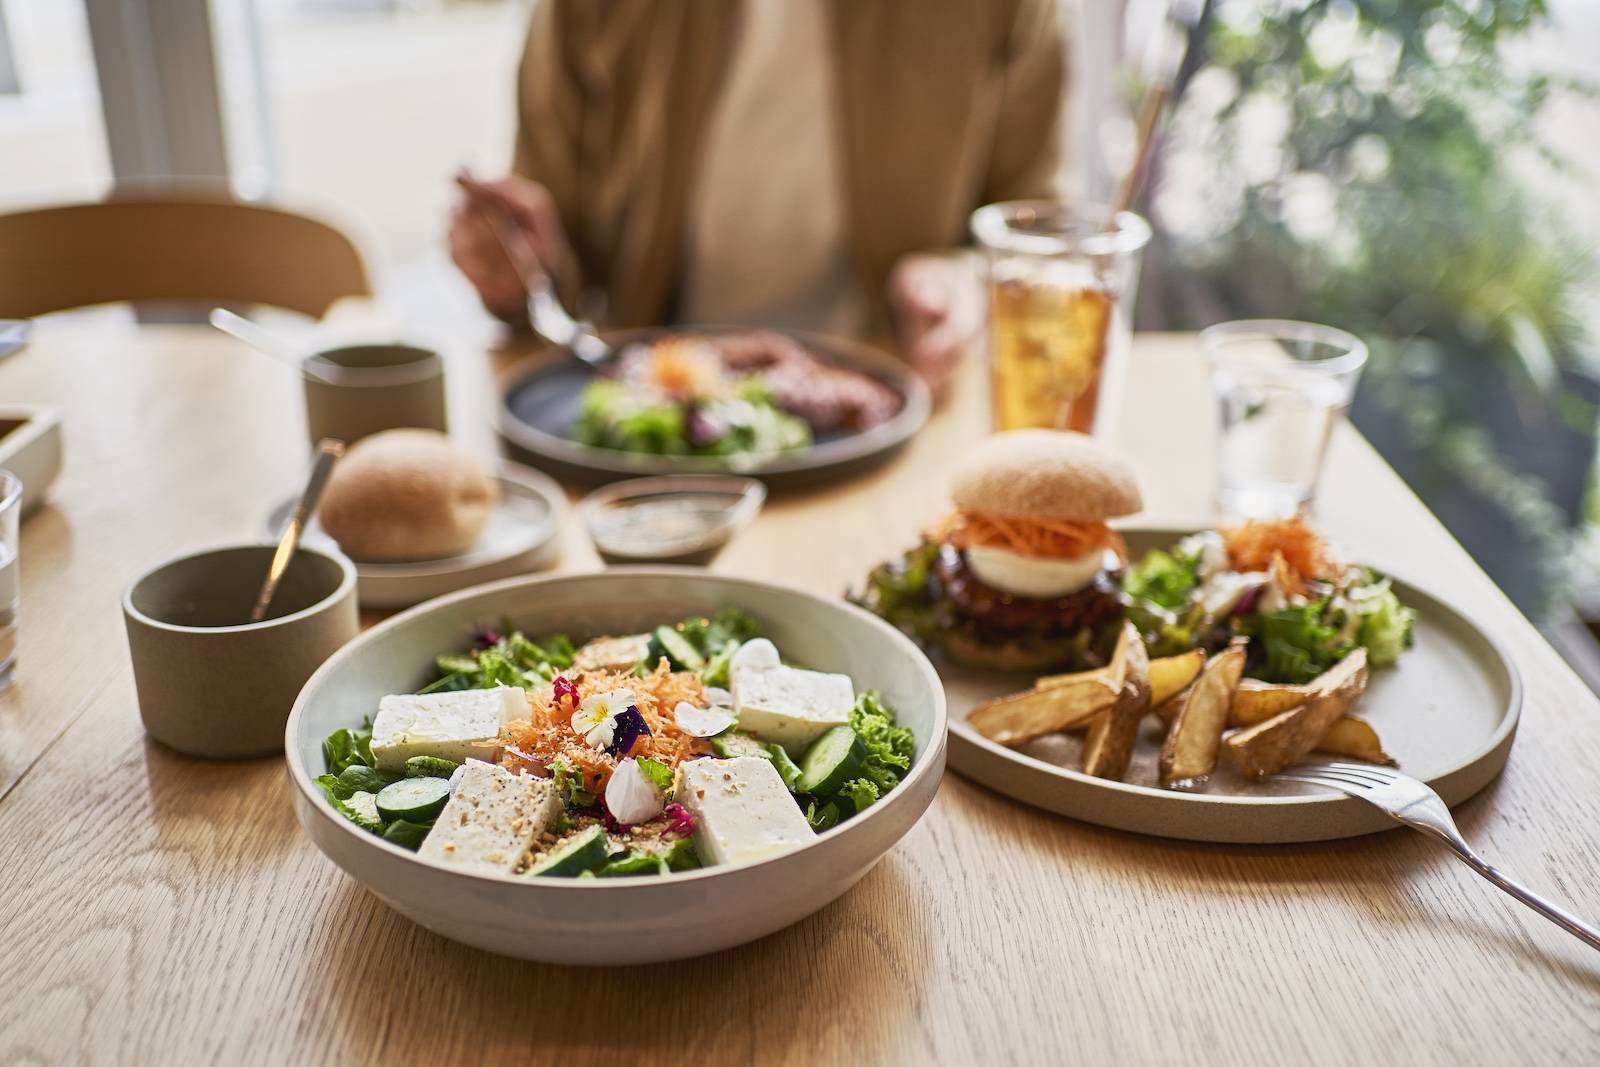 Raport Maczfit potwierdza, że dobre jedzenie to dobre życie (Fot. Getty Images / Yagi Studio)